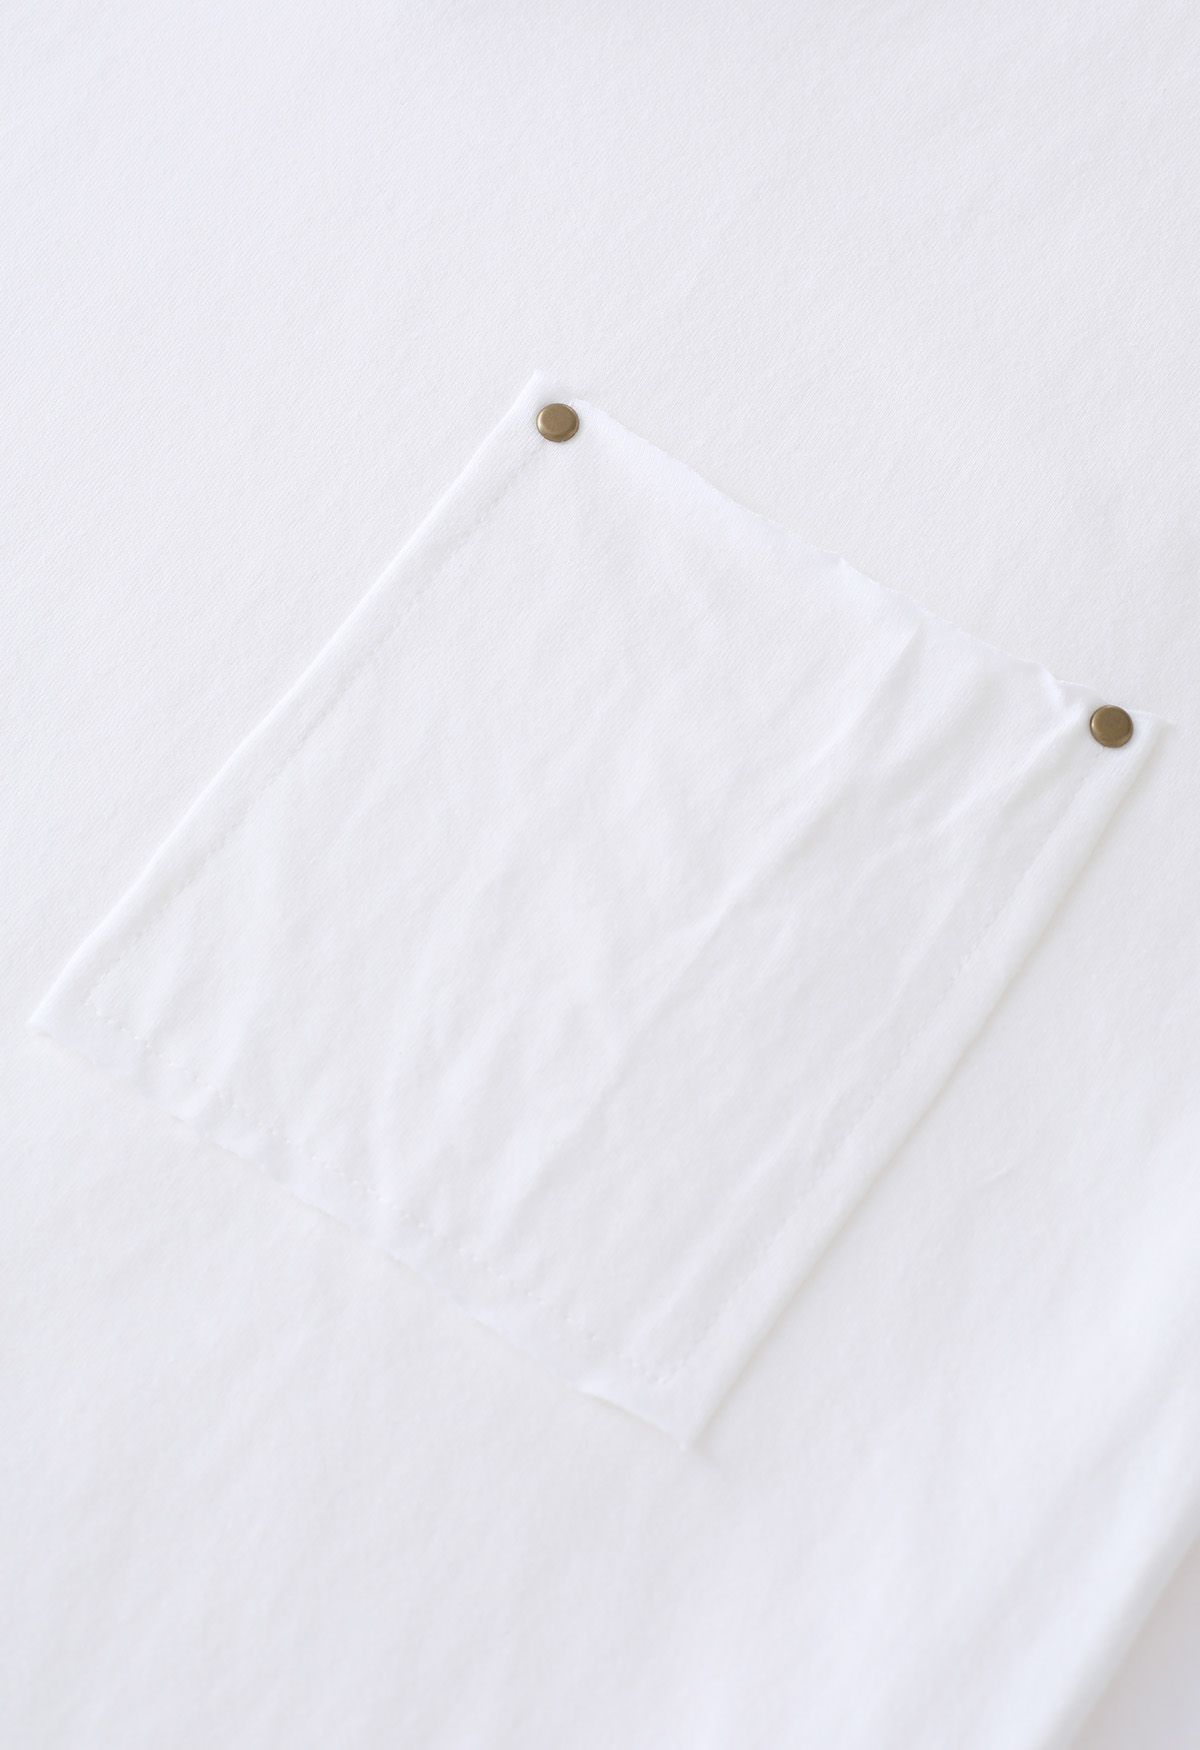 Rohschnitt-T-Shirt mit V-Ausschnitt und aufgesetzten Taschen in Weiß